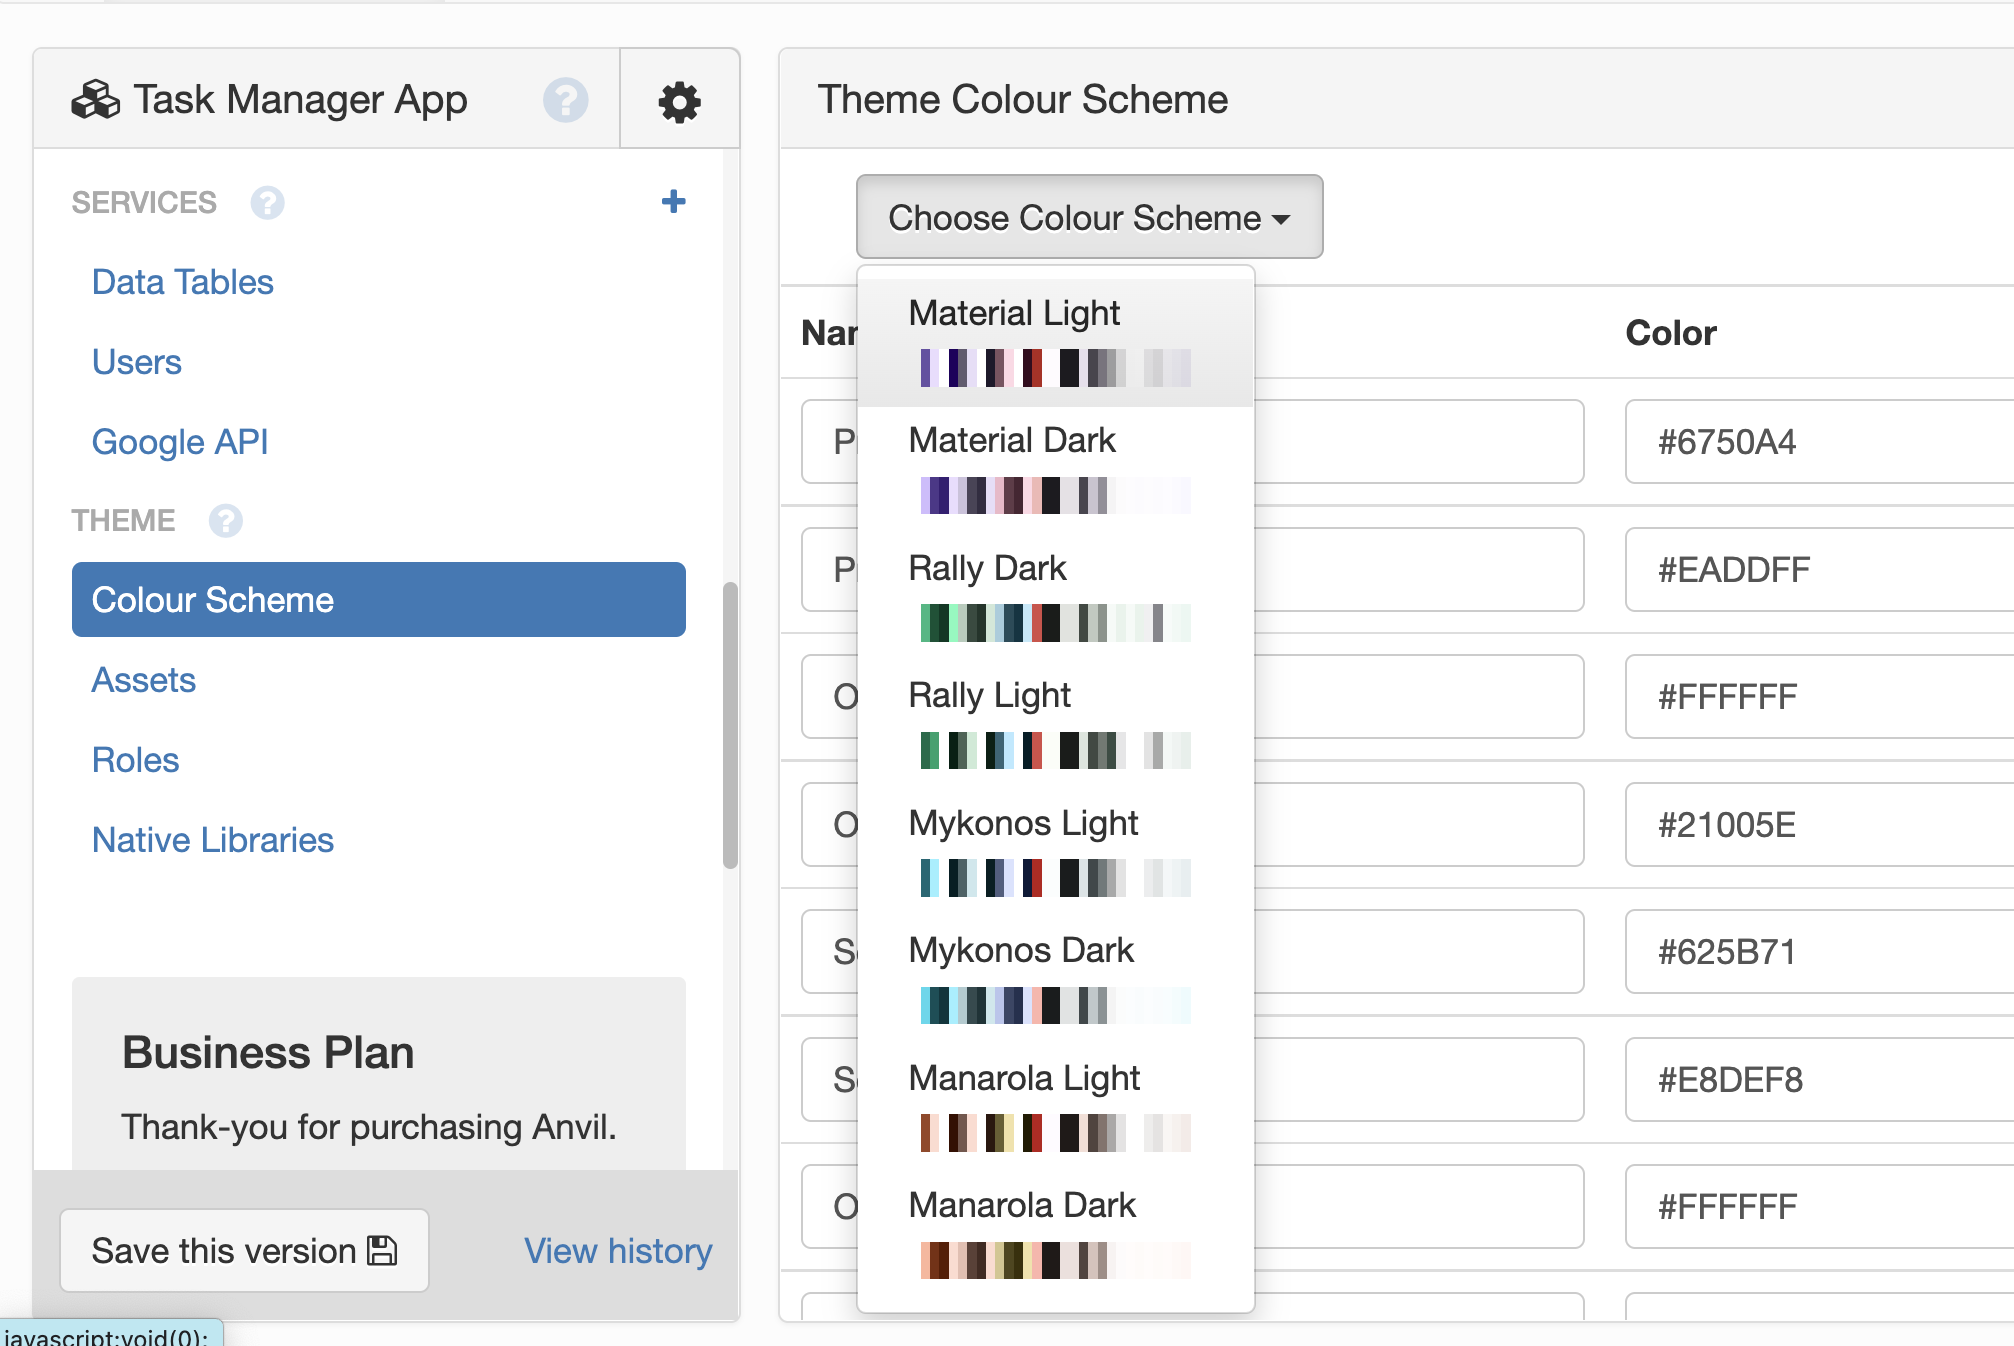 The &lsquo;Choose Colour Scheme&rsquo; dropdown menu lets you
choose a different colour scheme.